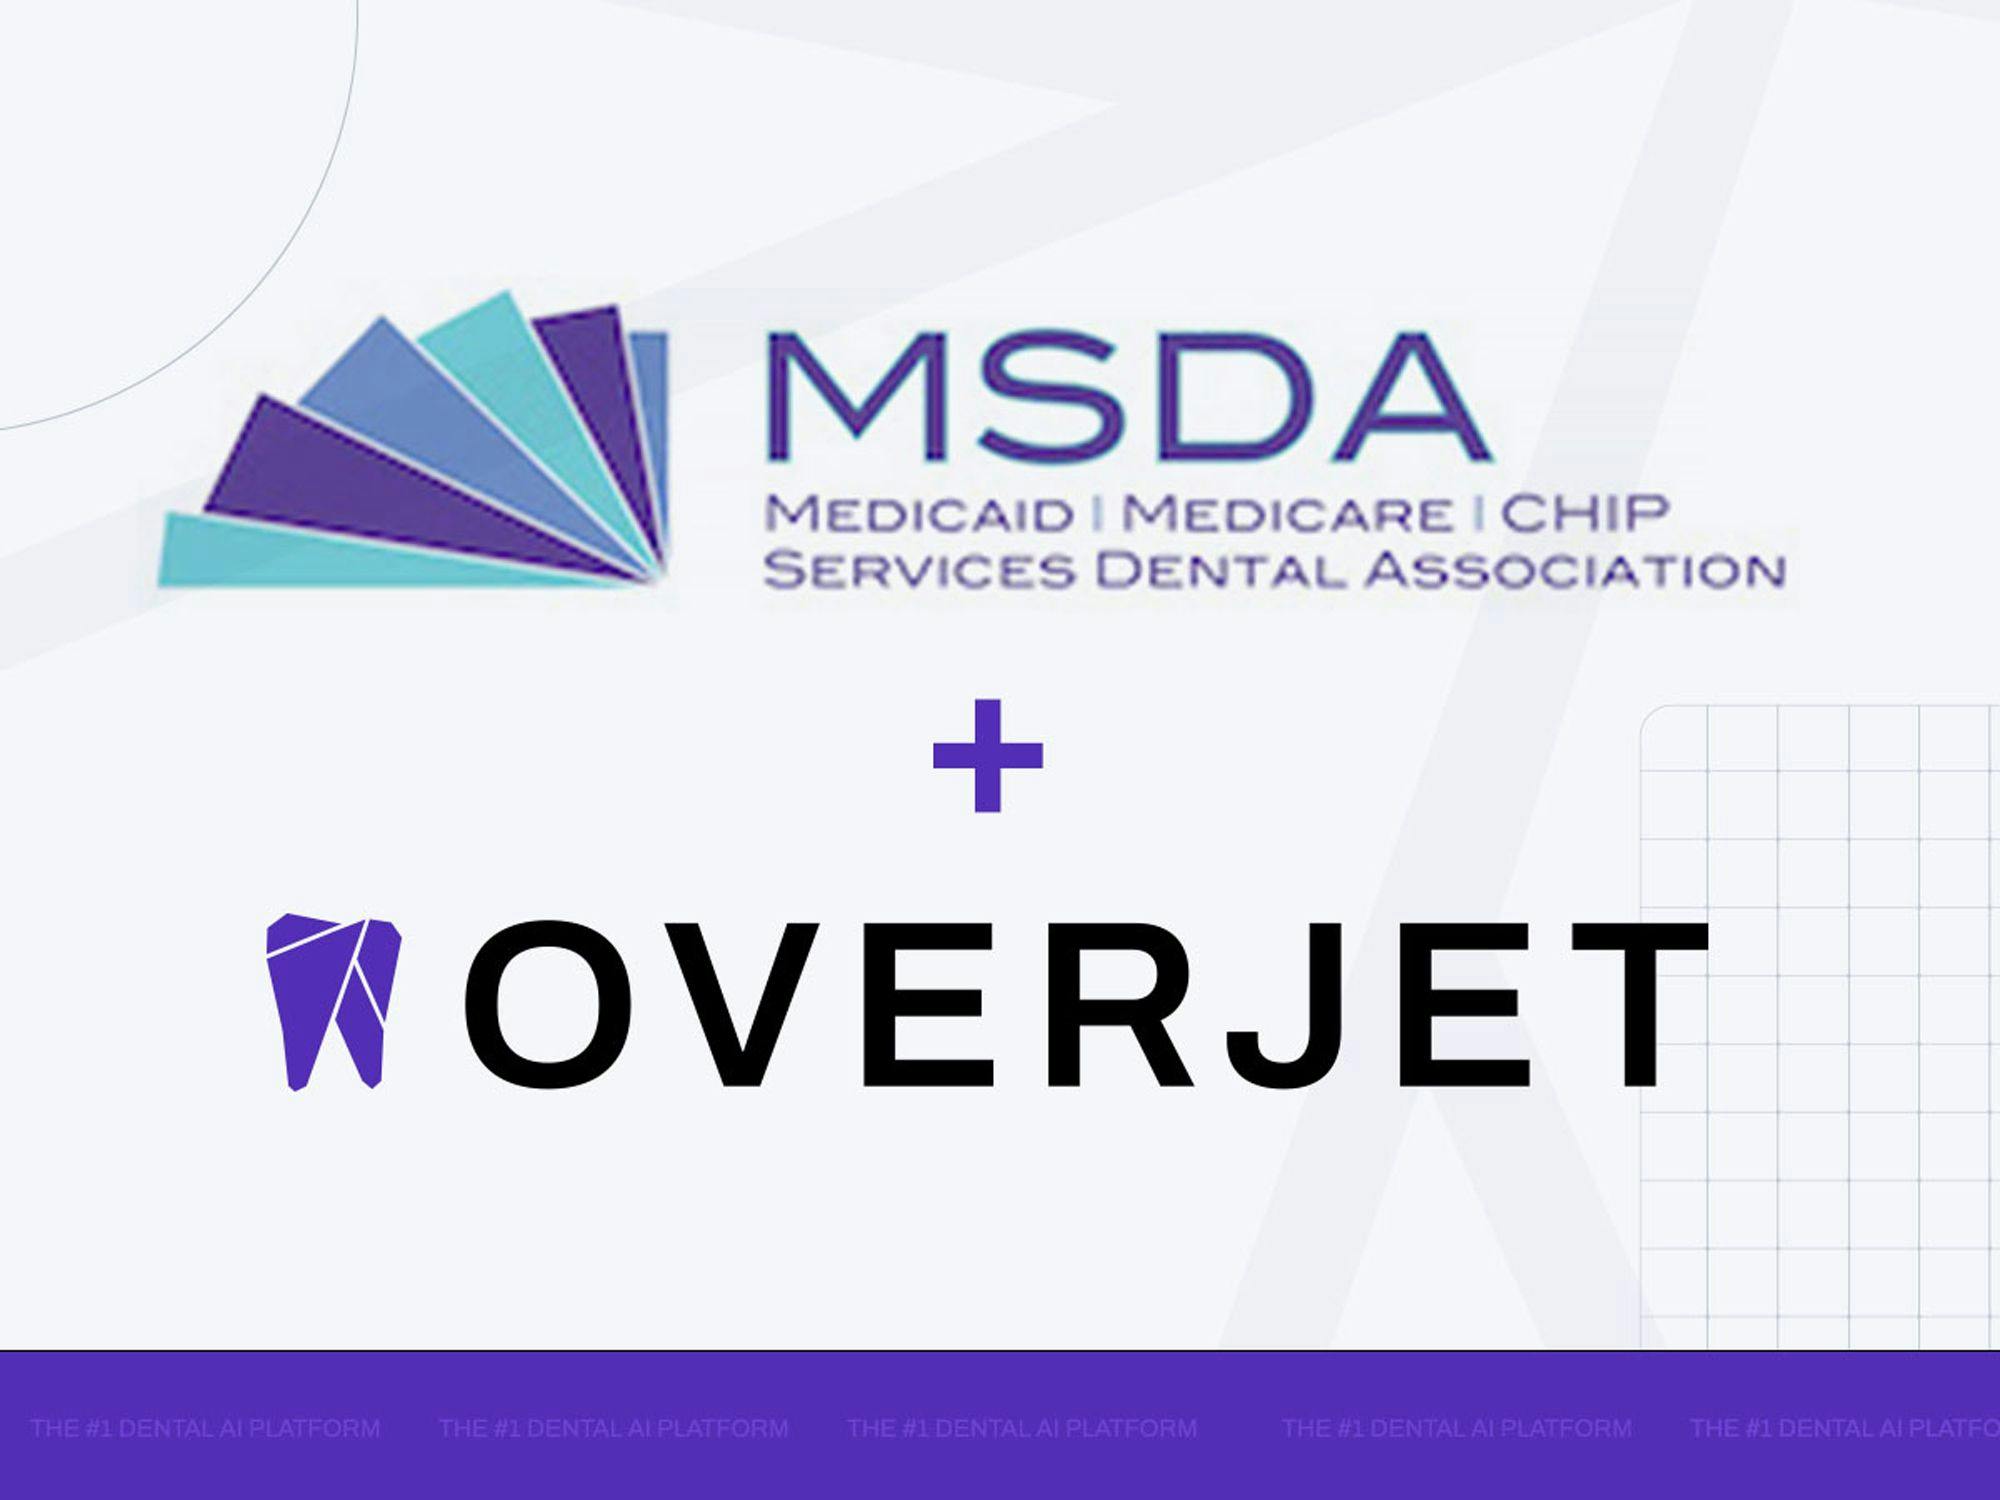 Medicaid-Medicare-CHIP Services Dental Association Partners with Overjet